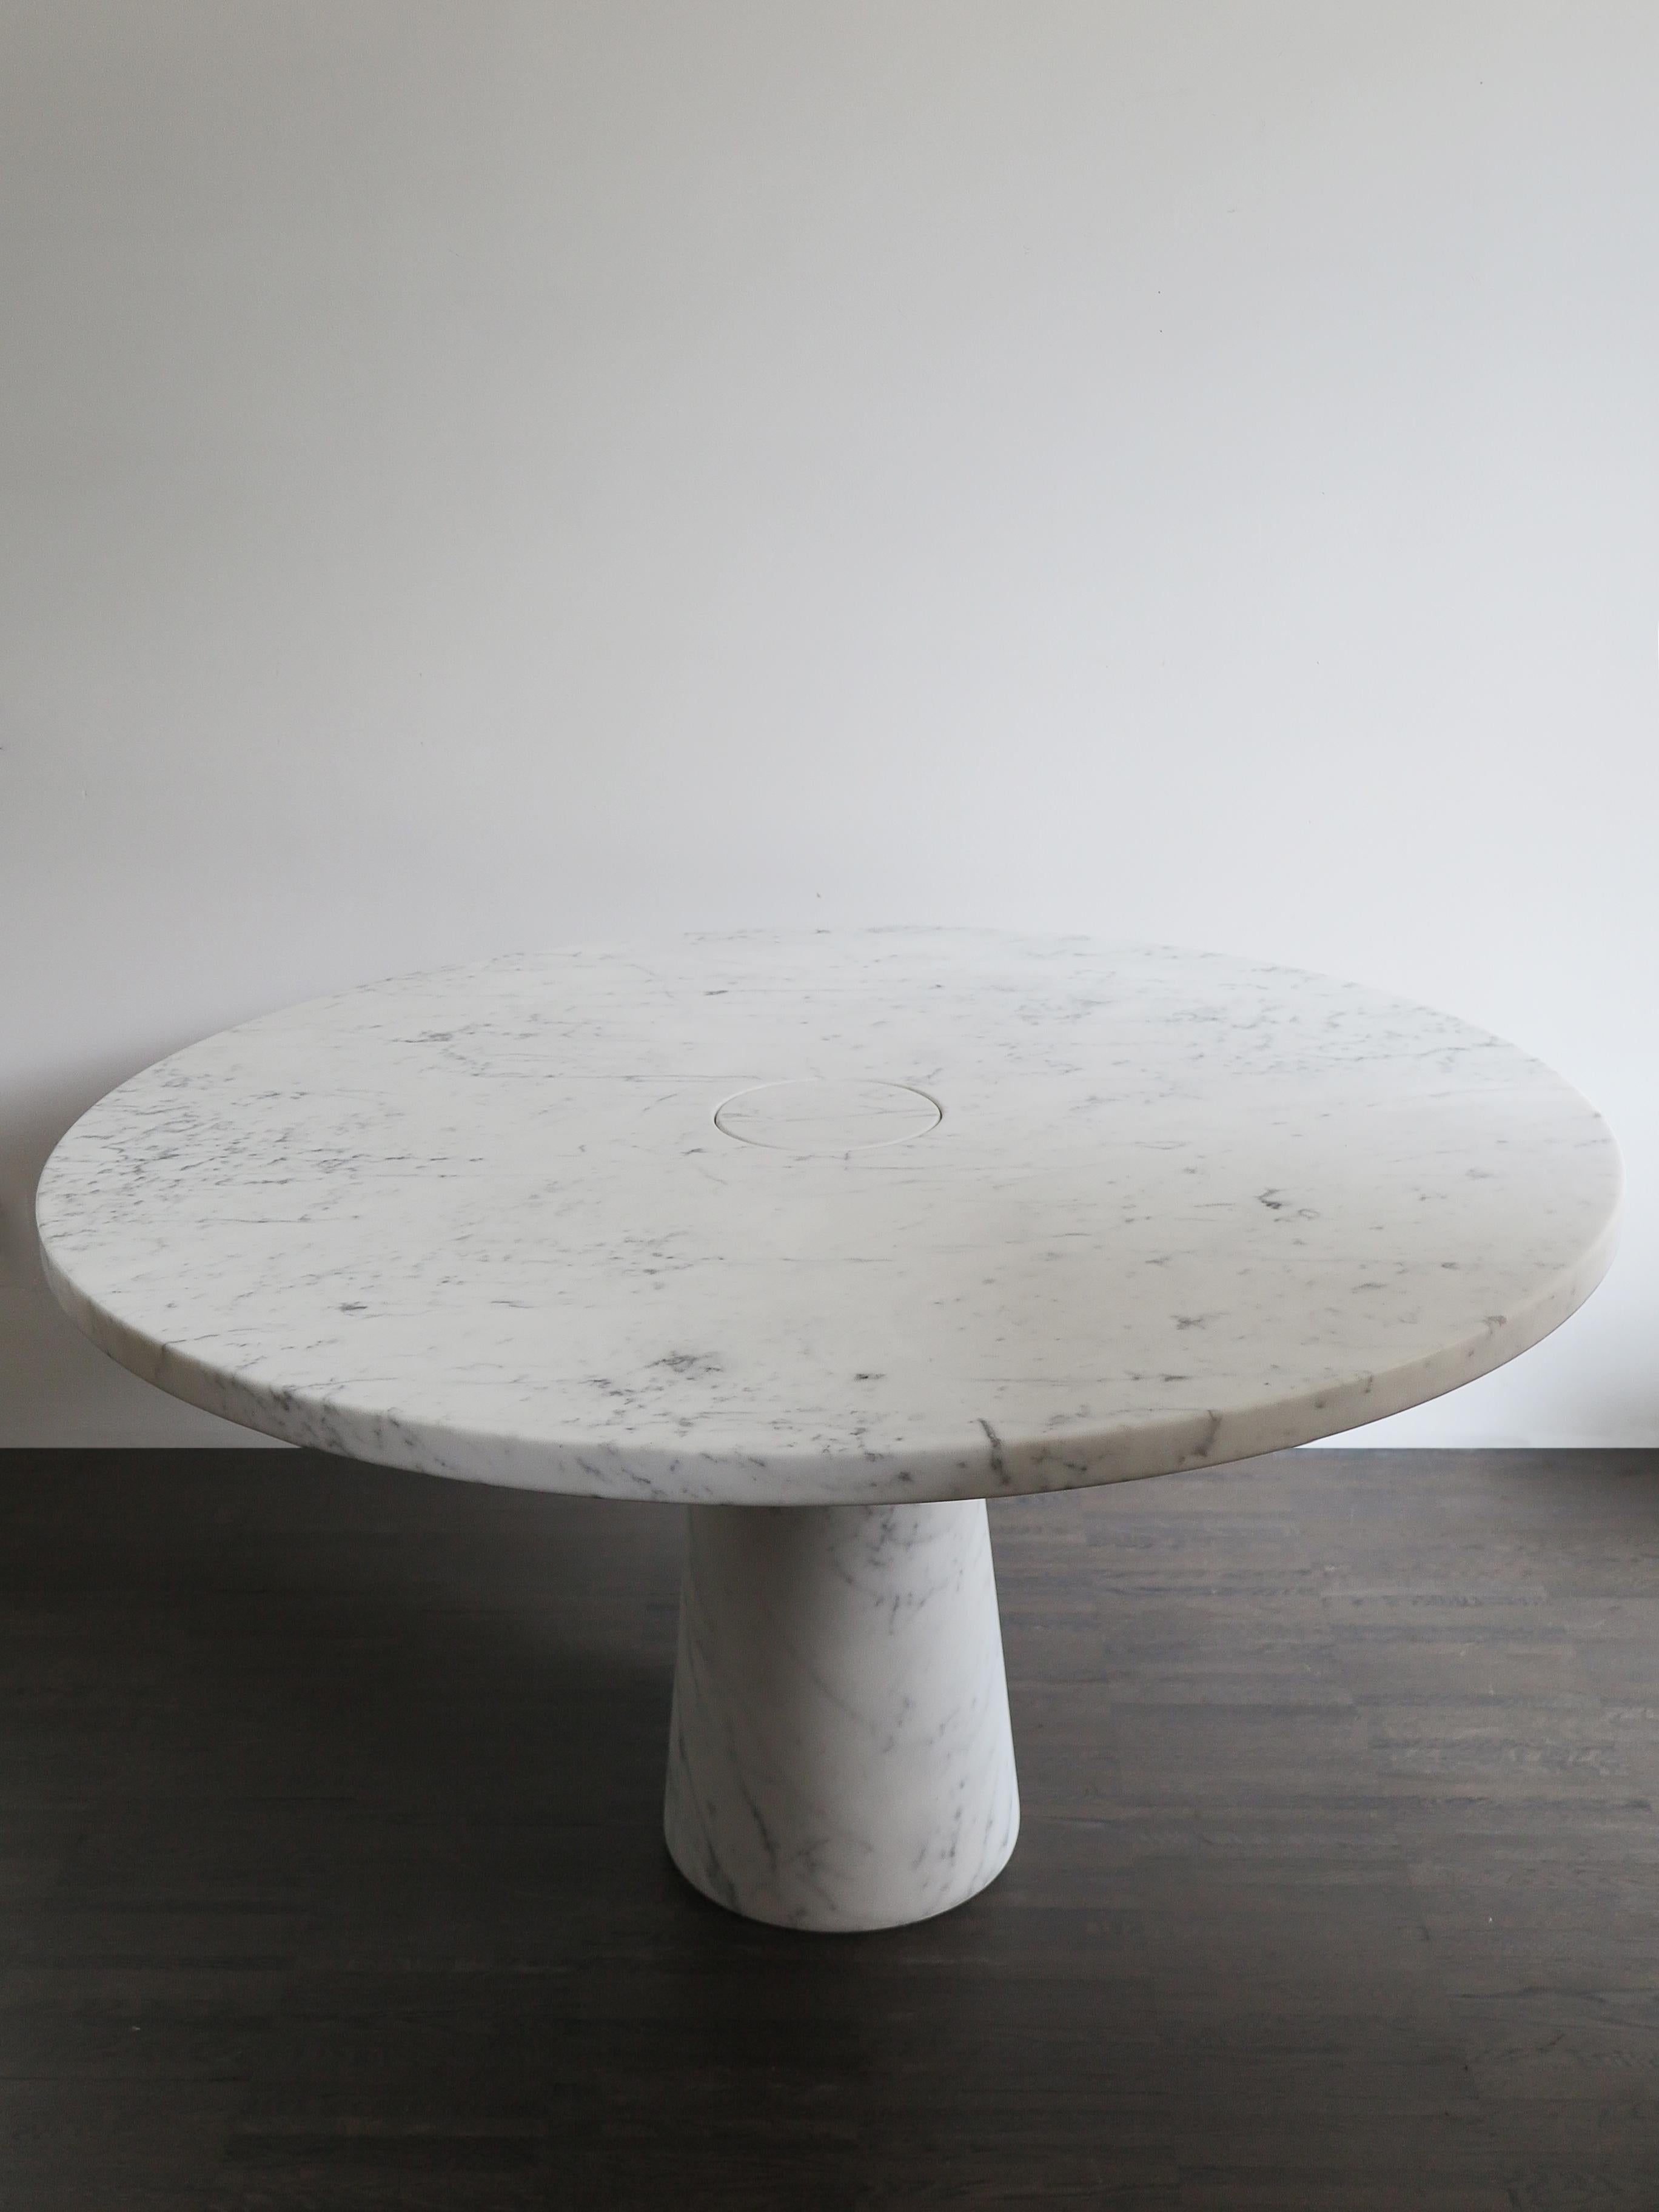 Mesa italiana de mármol blanco de Carrara serie Eros diseñada por Angelo Mangiarotti en 1971, la mesa Eros se empotra por gravedad entre el tablero y la pata gracias a la sección troncocónica de la propia pata, que acoge fácilmente el tablero